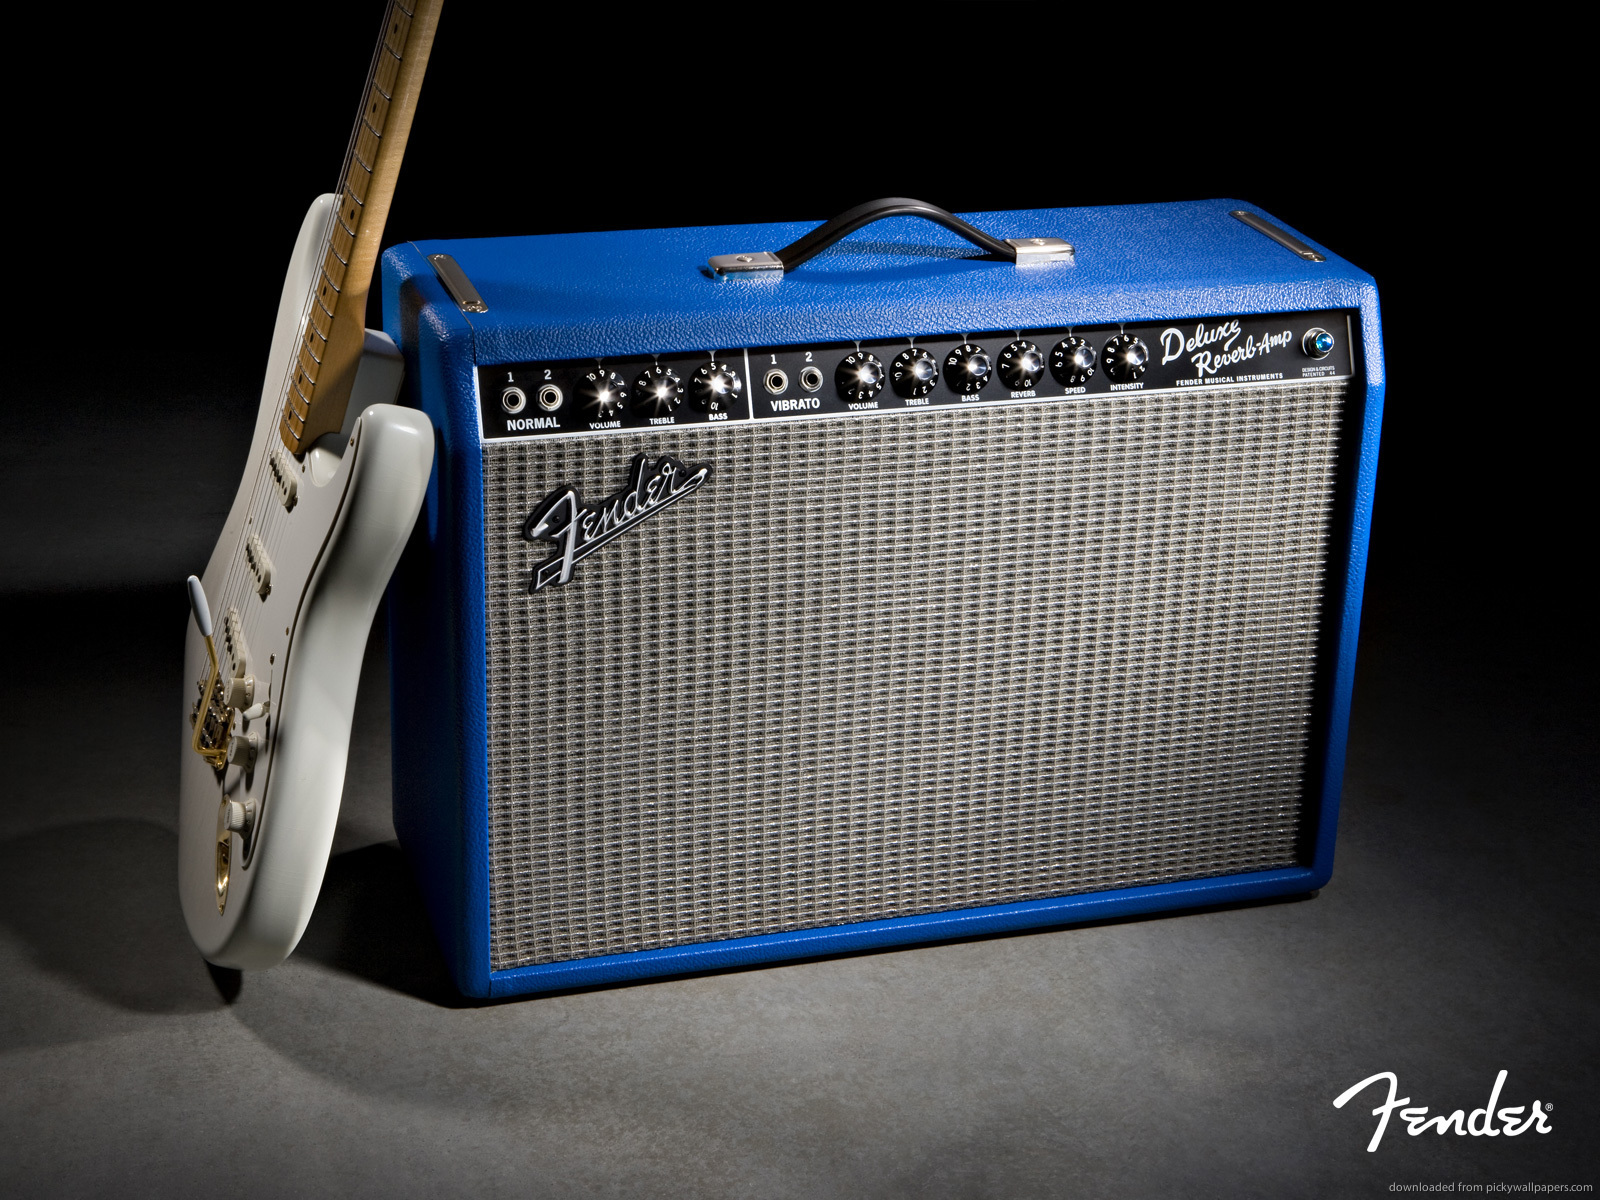 Silver Fender Guitar And Blue Amplifier Wallpaper Hd Fender Guitar Wallpaper